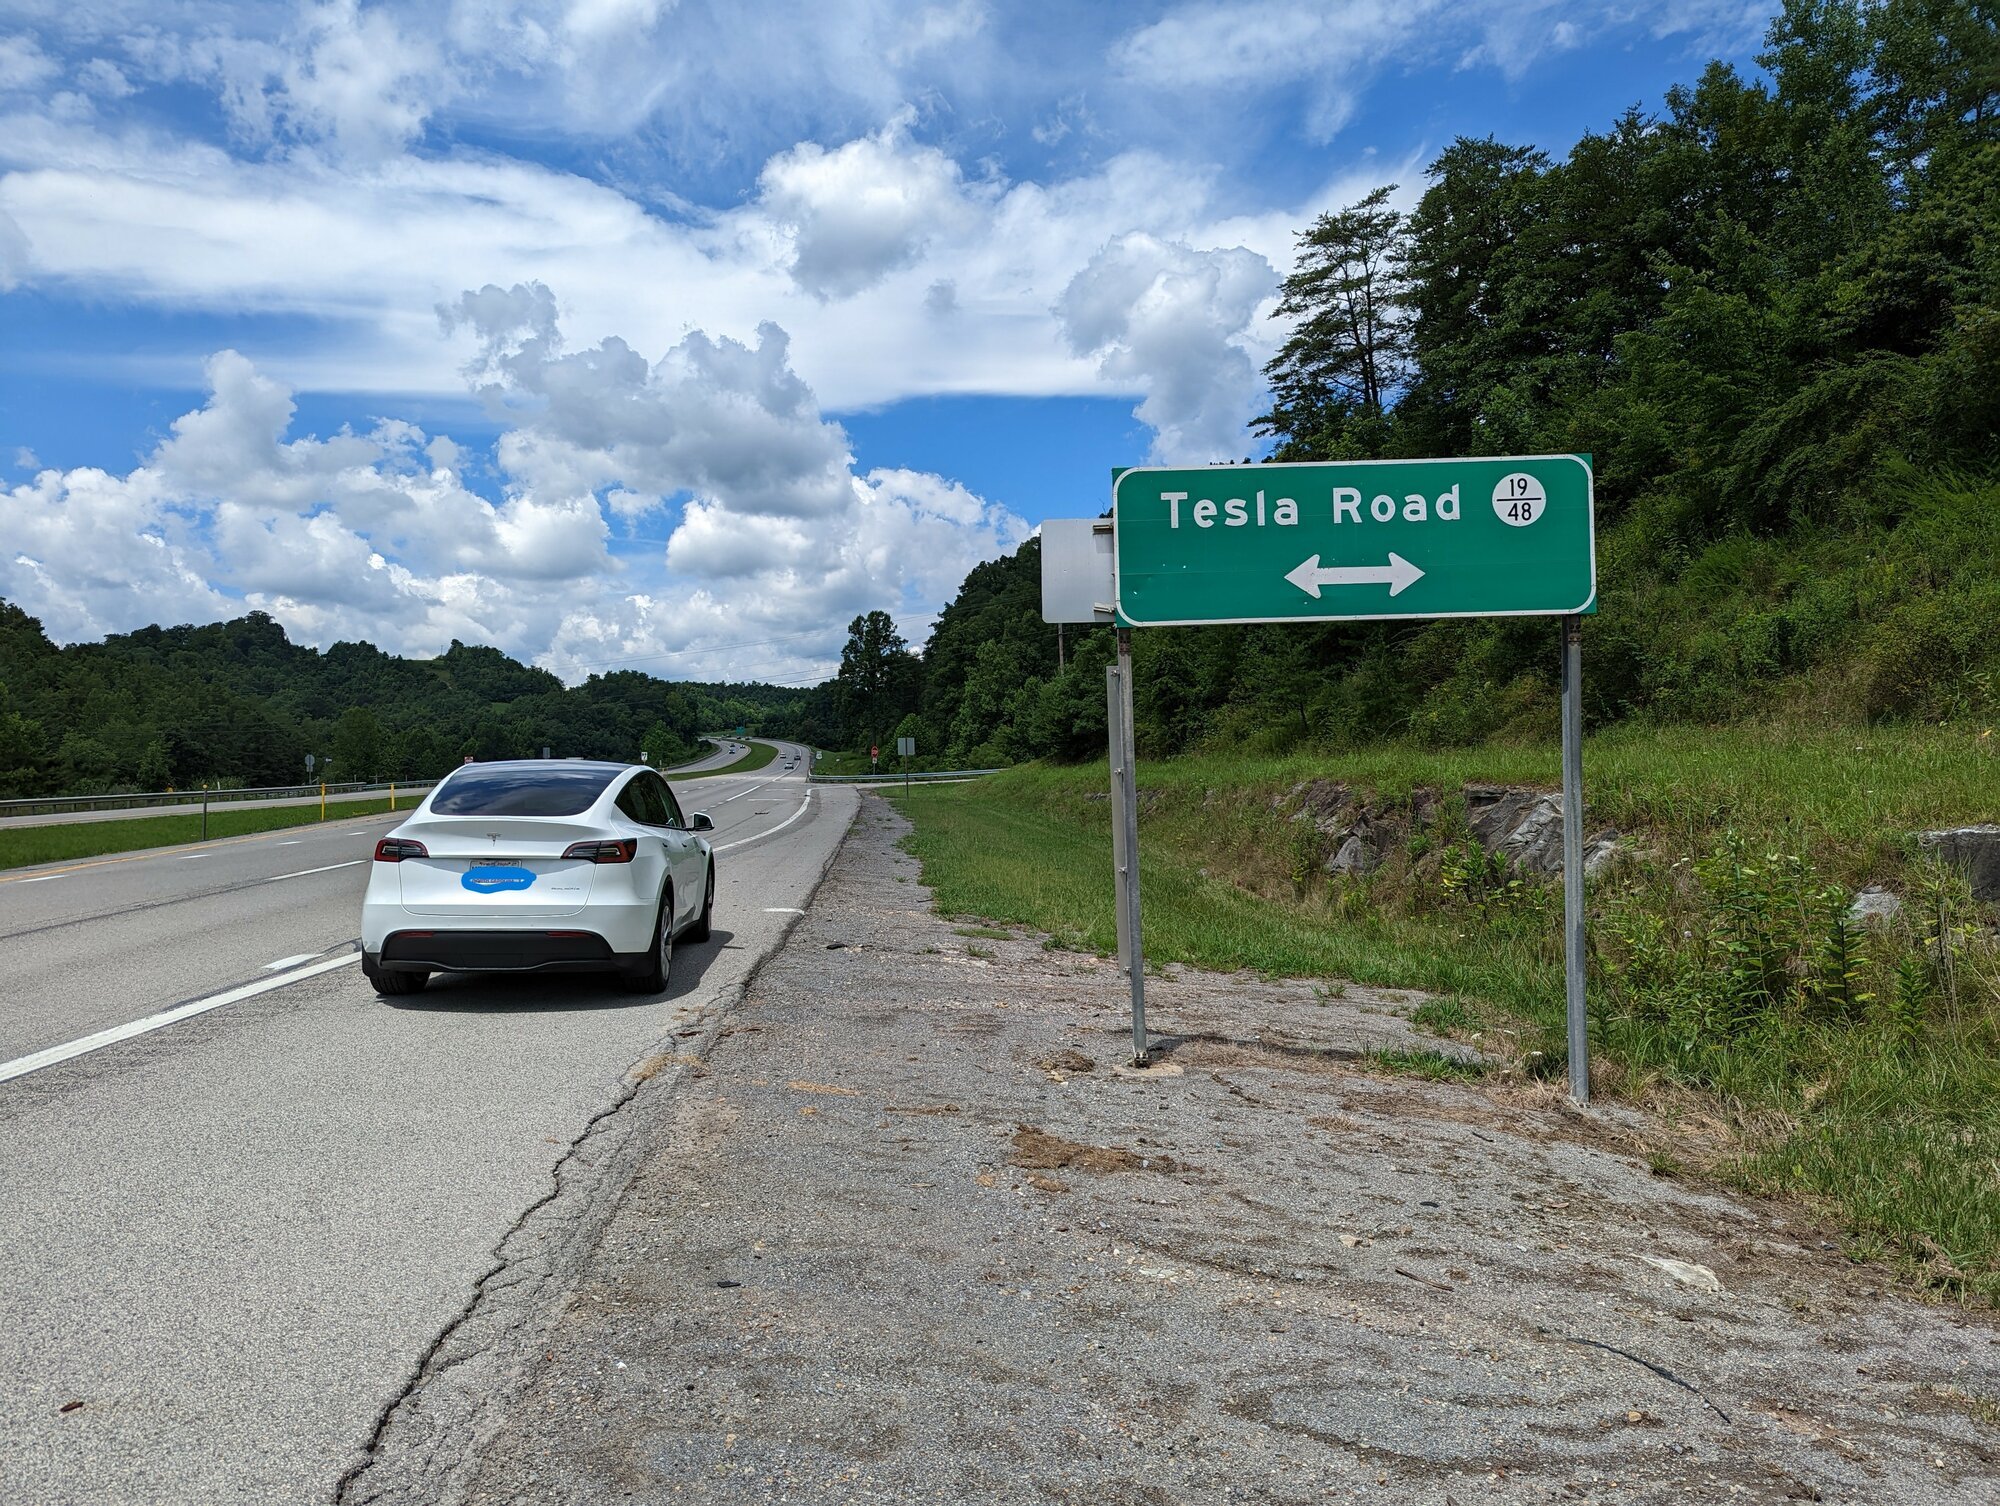 Tesla Road1.jpg